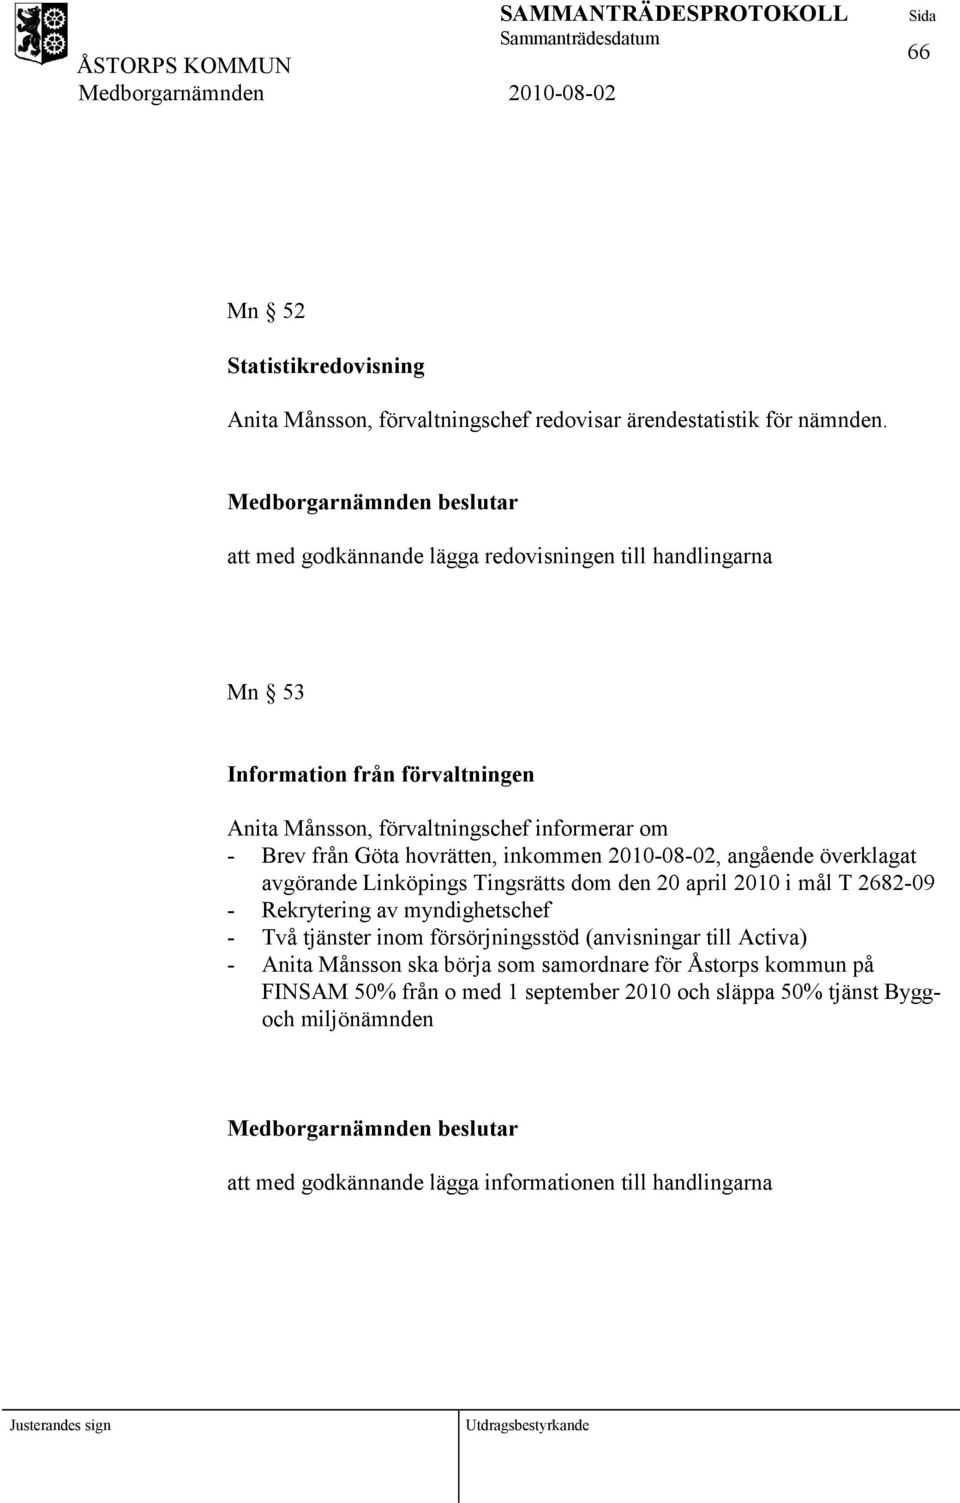 inkommen 2010-08-02, angående överklagat avgörande Linköpings Tingsrätts dom den 20 april 2010 i mål T 2682-09 - Rekrytering av myndighetschef - Två tjänster inom